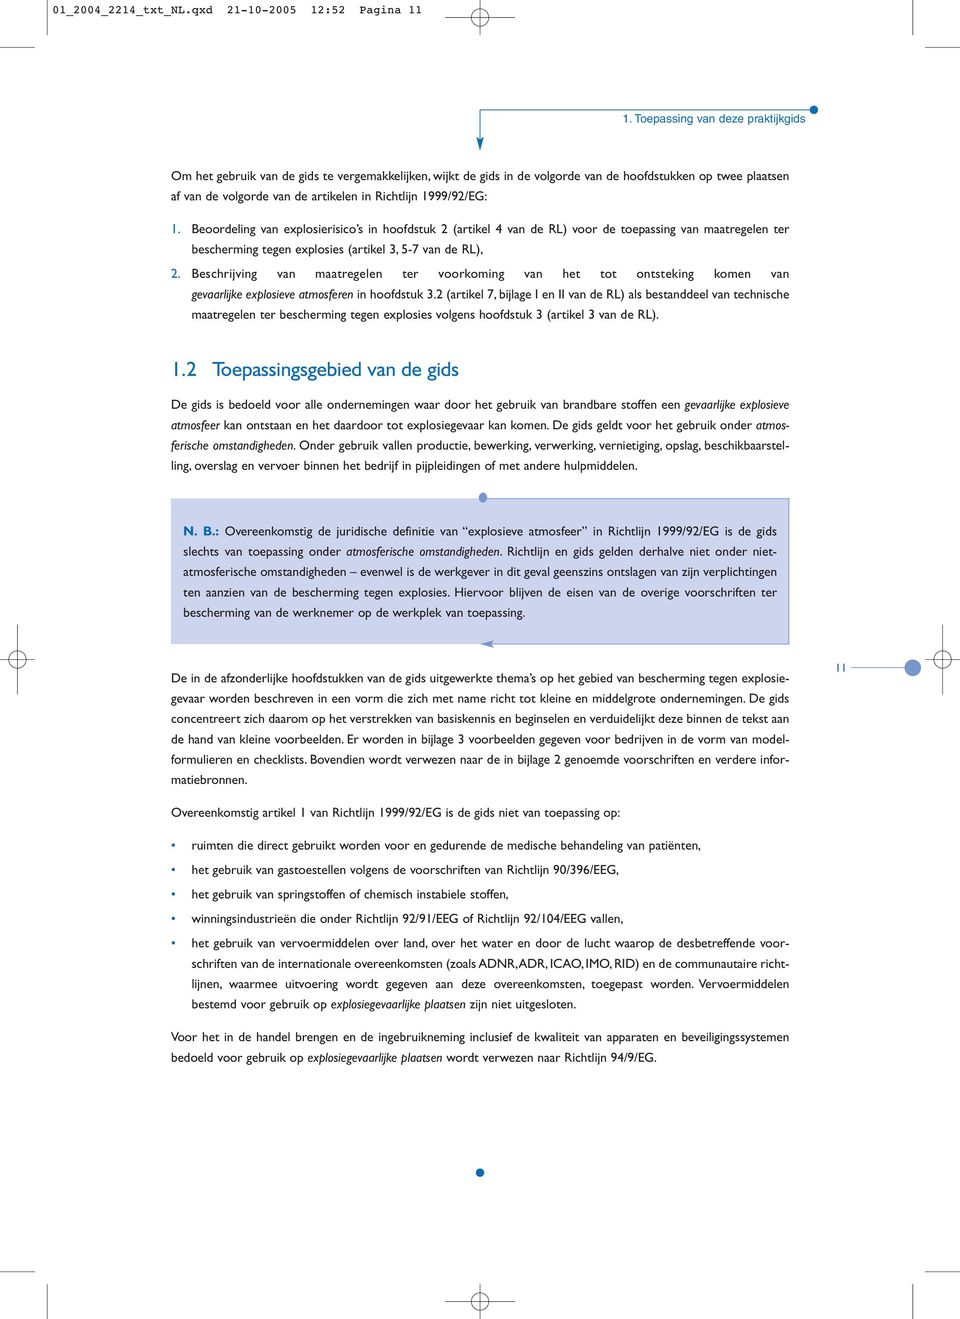 1999/92/EG: 1. Beoordeling van explosierisico s in hoofdstuk 2 (artikel 4 van de RL) voor de toepassing van maatregelen ter bescherming tegen explosies (artikel 3, 5-7 van de RL), 2.